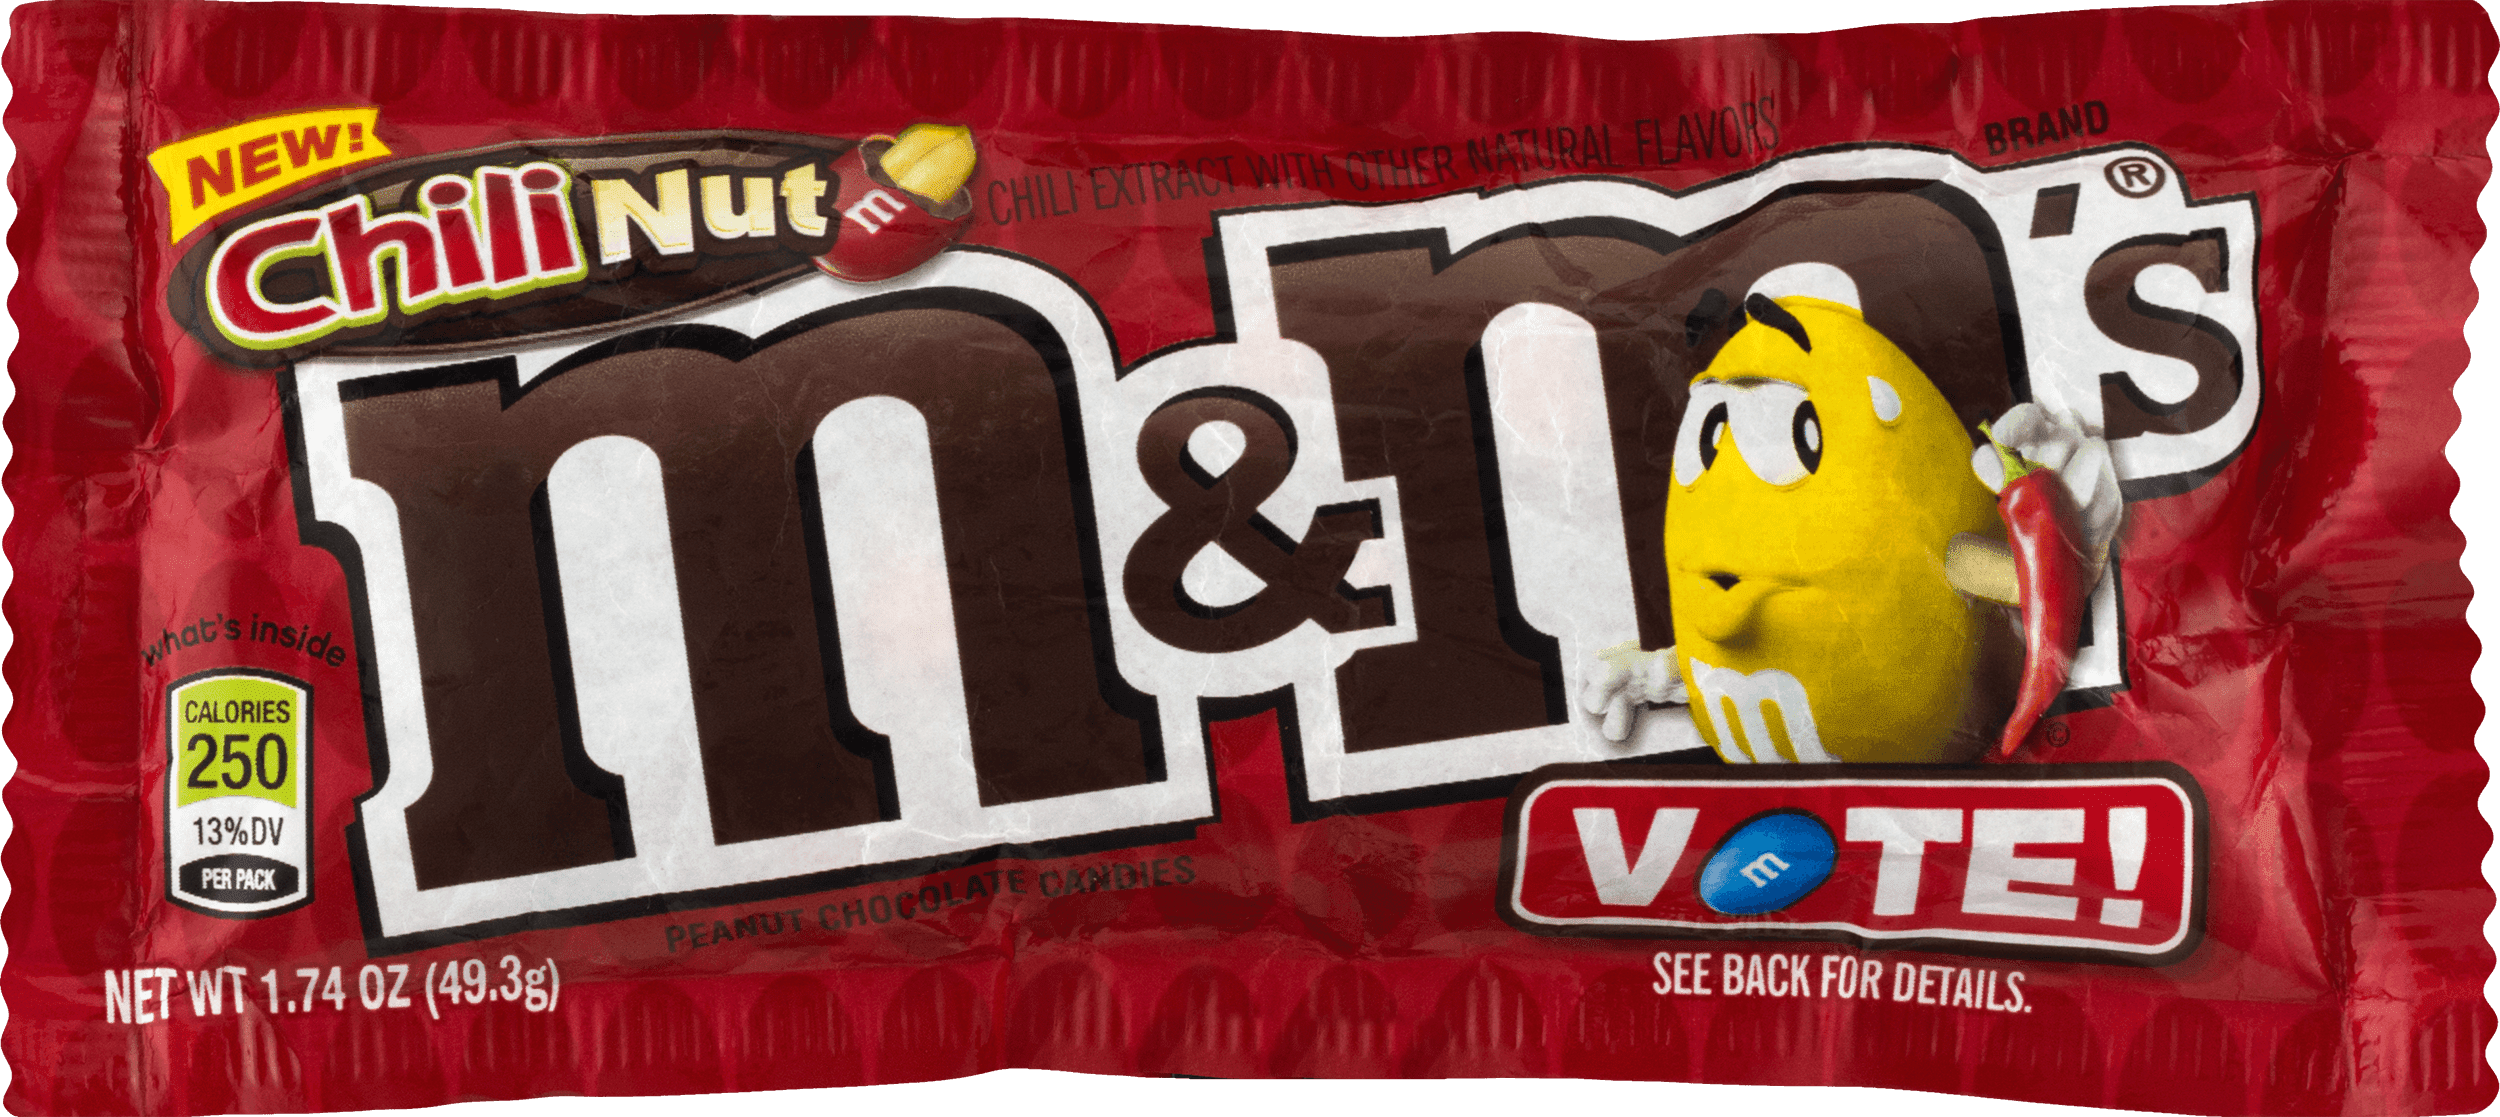 M&M's Peanut Flavors Contest 2019